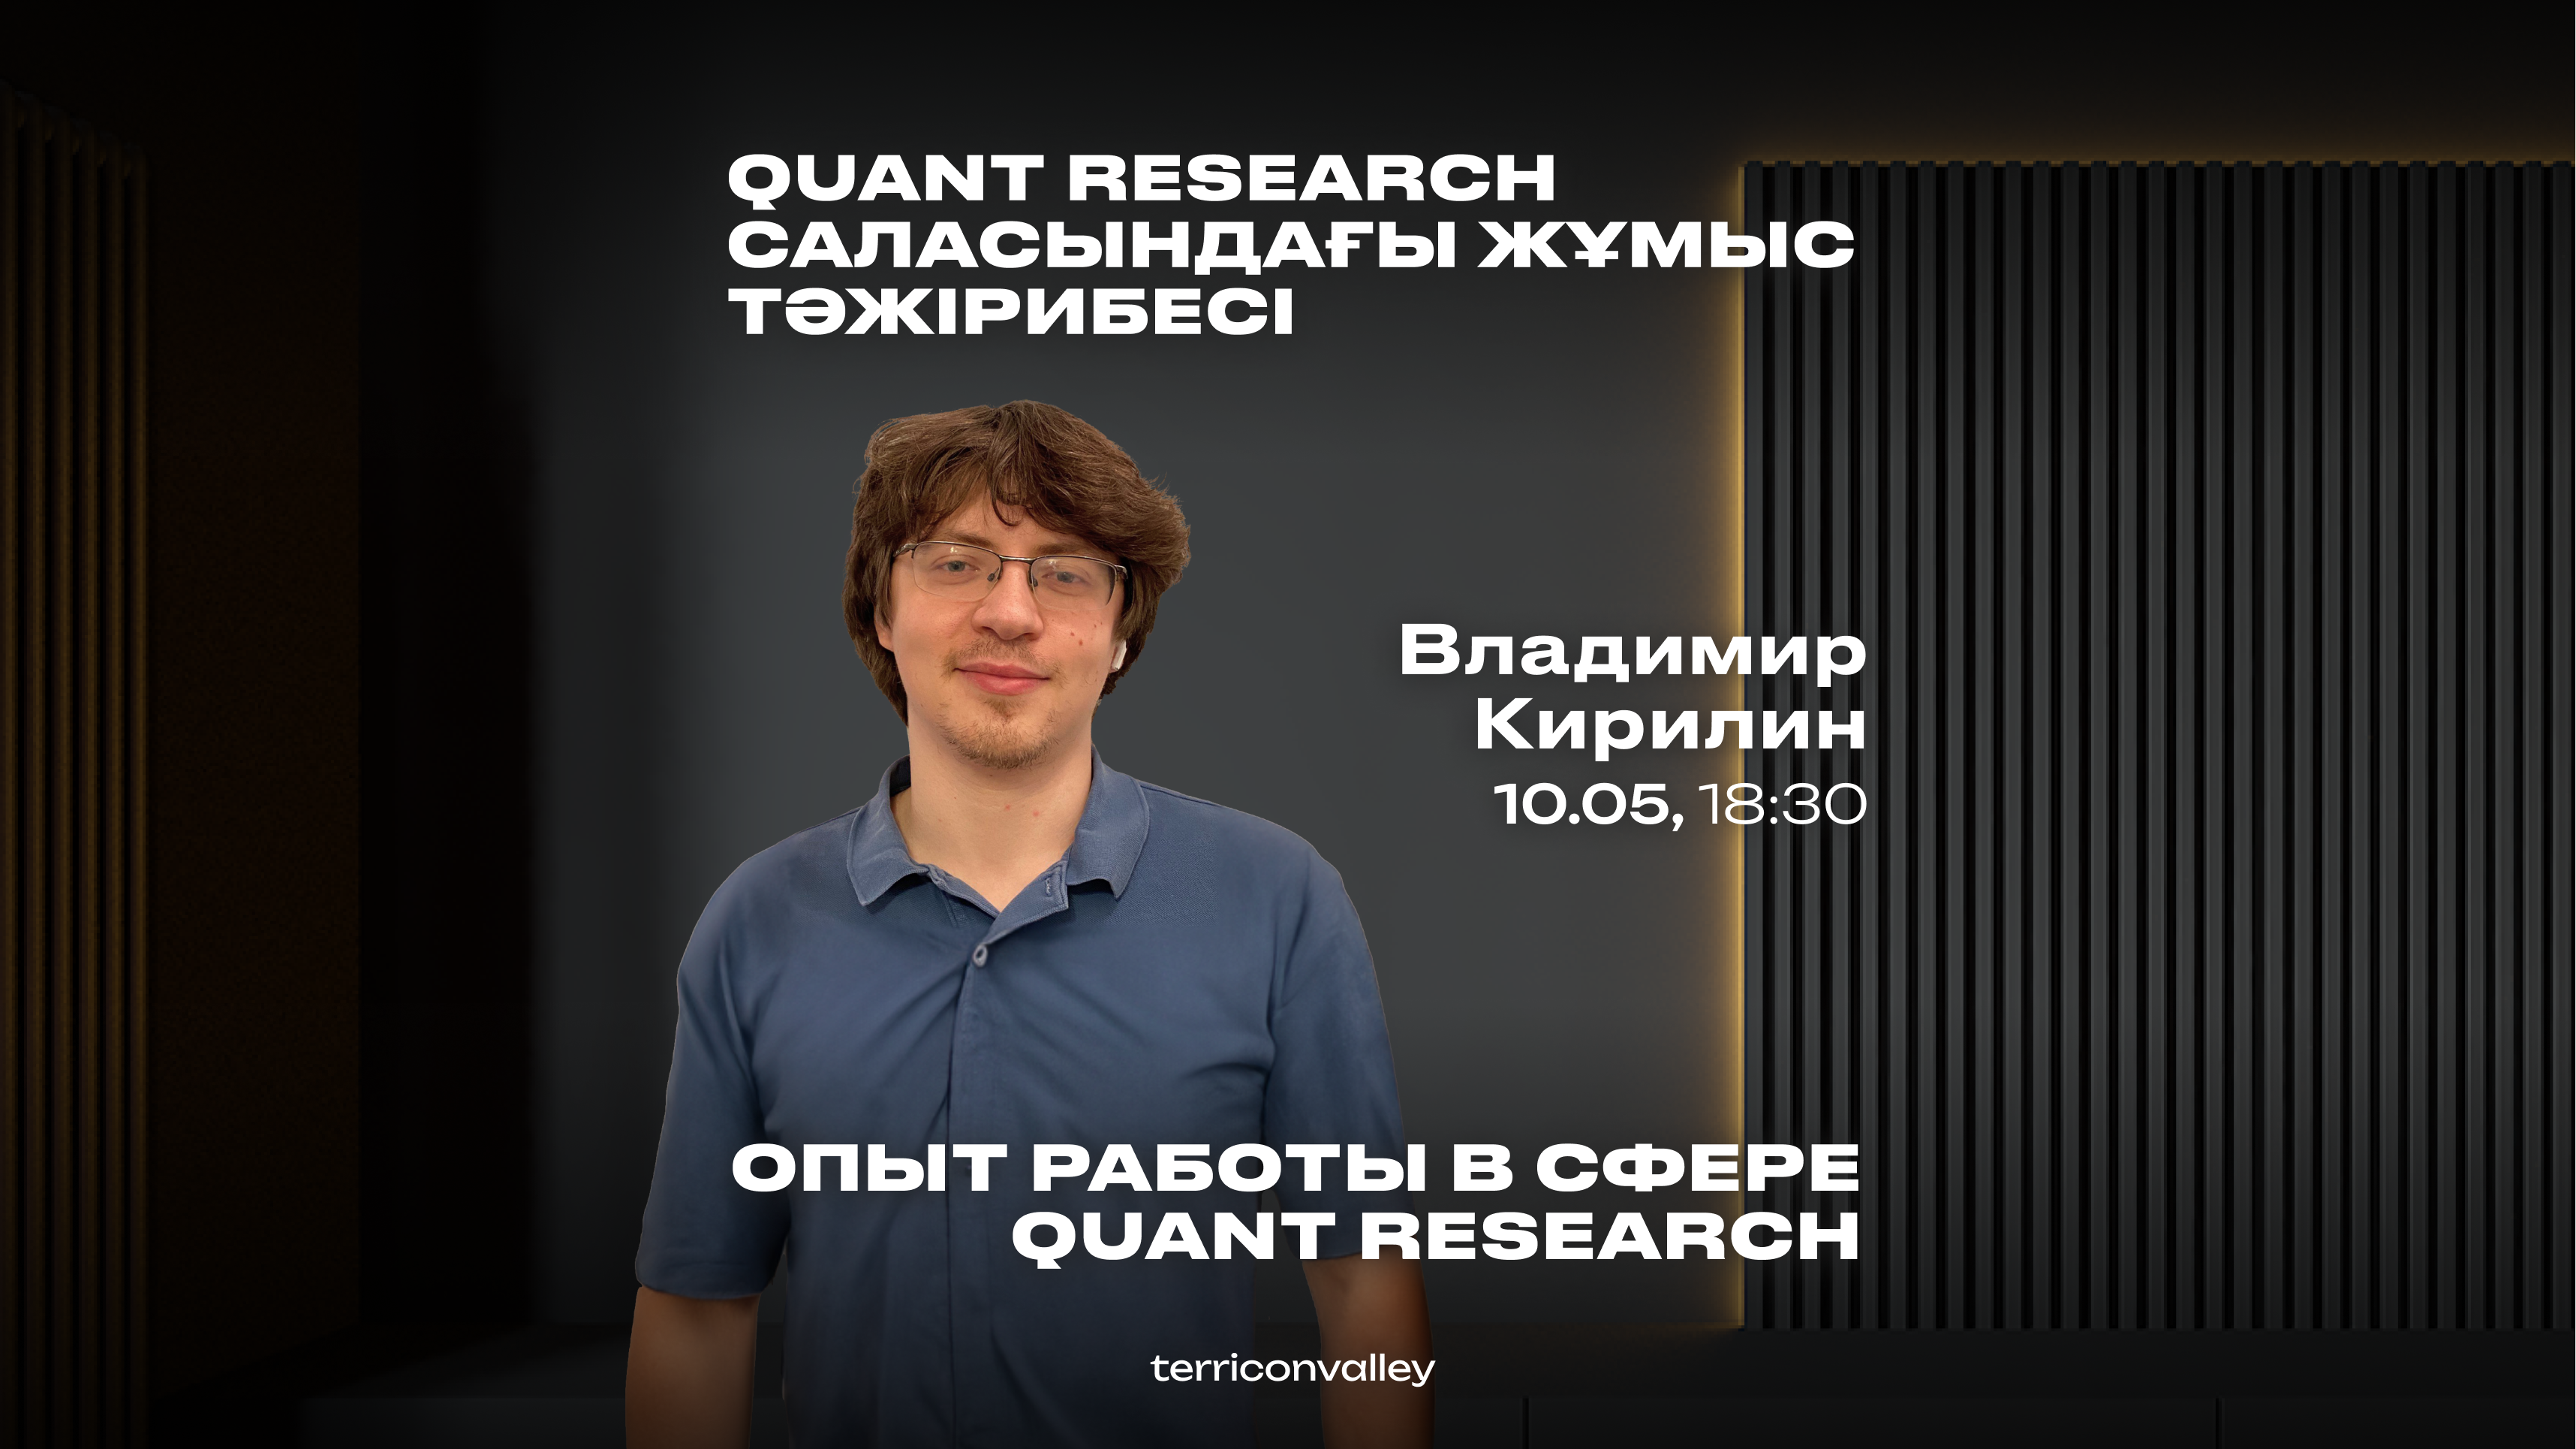 Владимир Кирилин, Quantitative Researcher